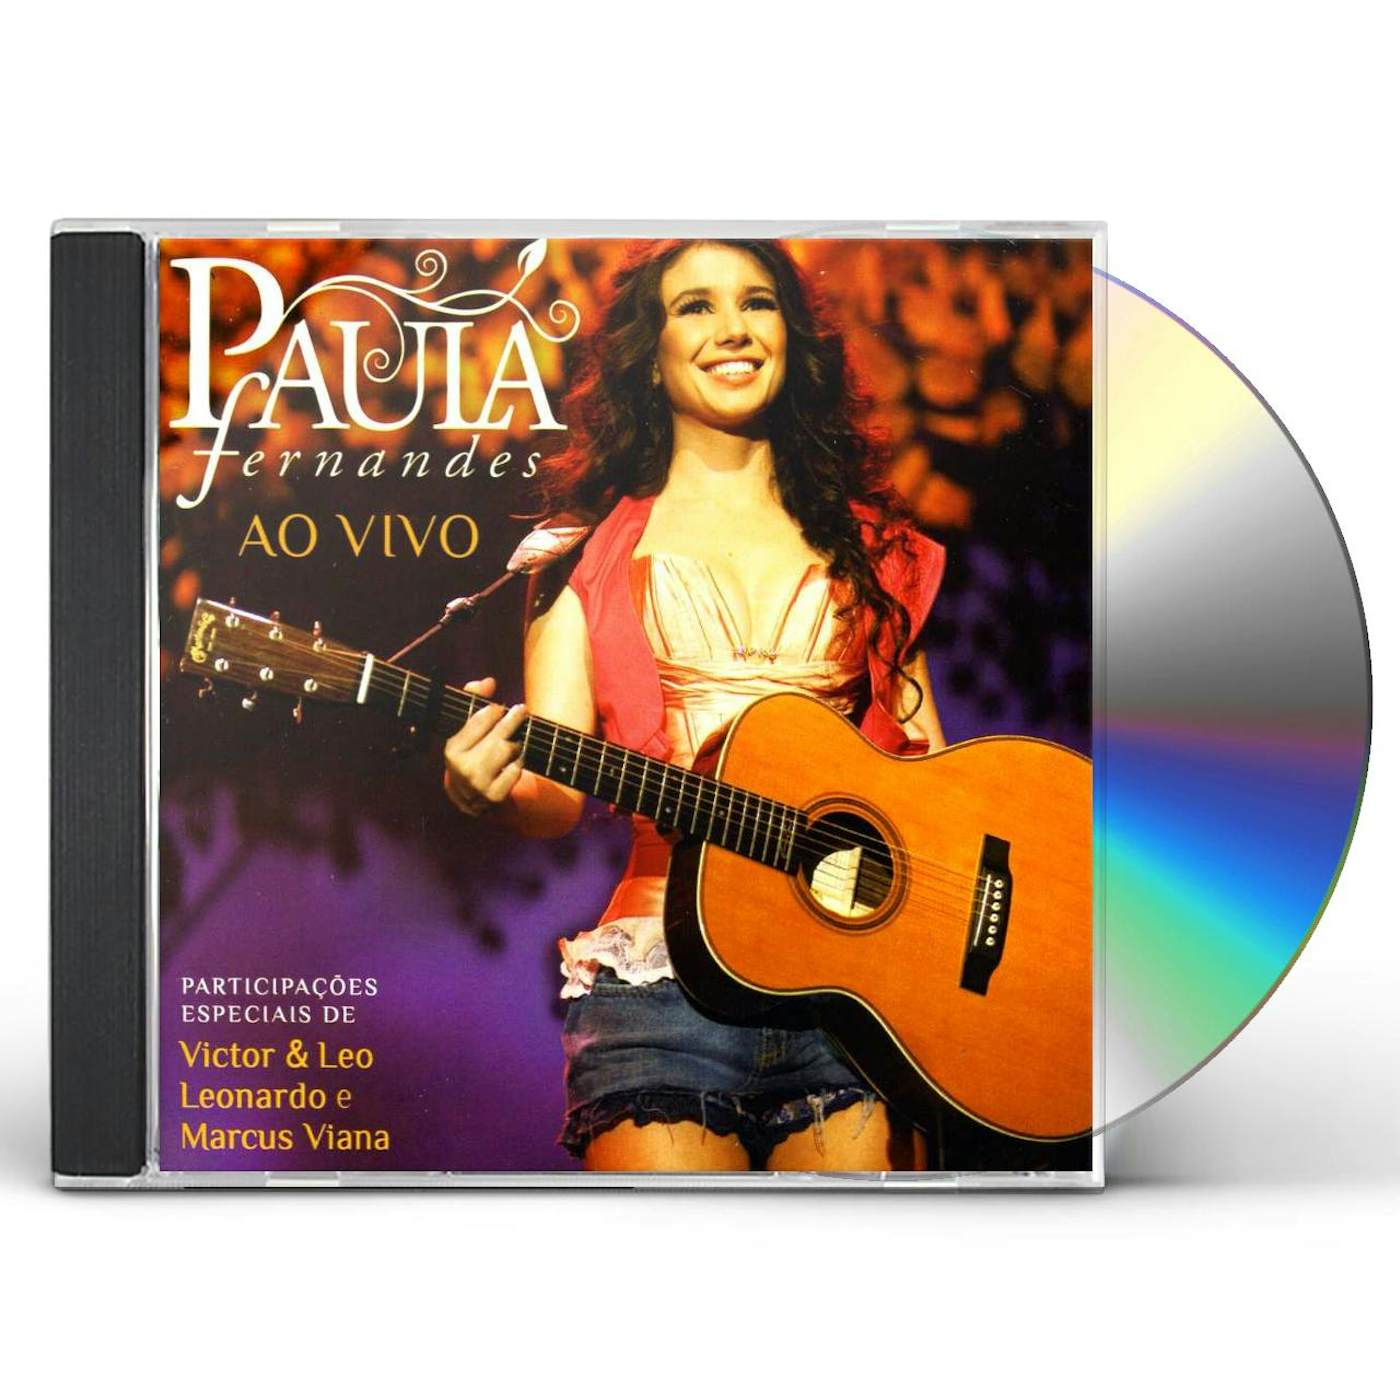 Paula Fernandes AO VIVO CD